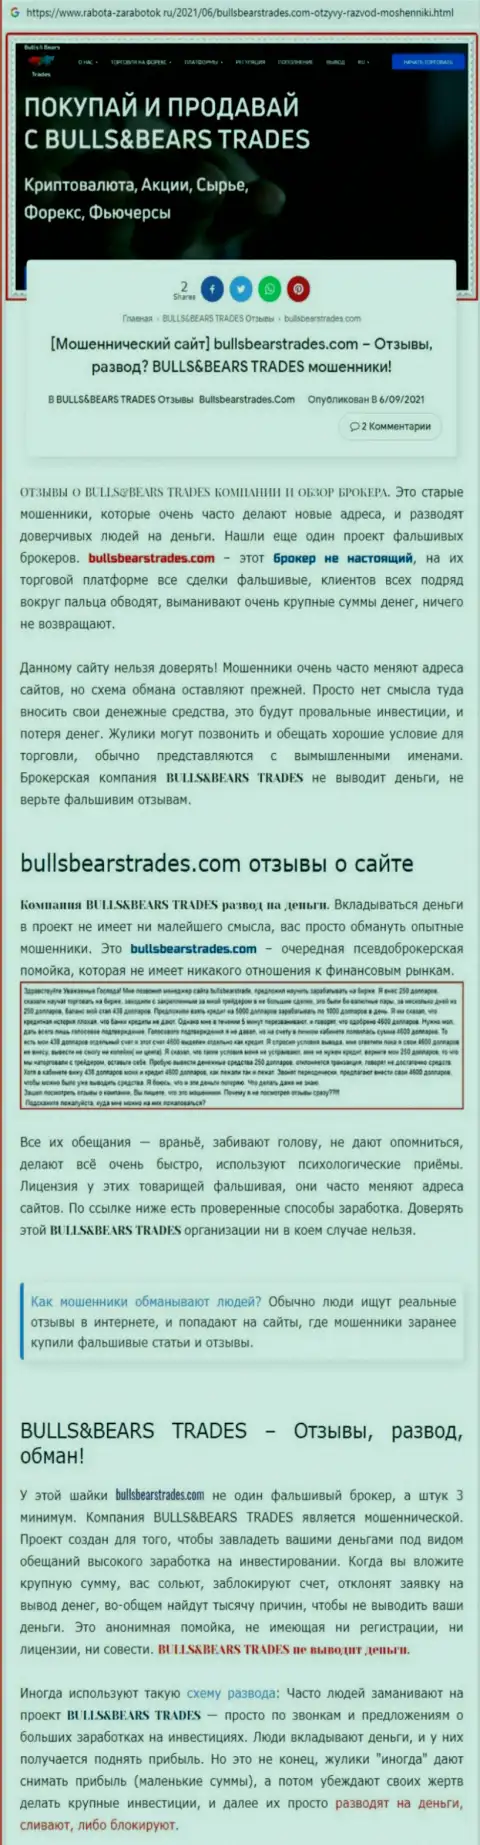 Обзор противоправно действующей компании BullsBearsTrades Com про то, как обворовывает до последней копейки лохов